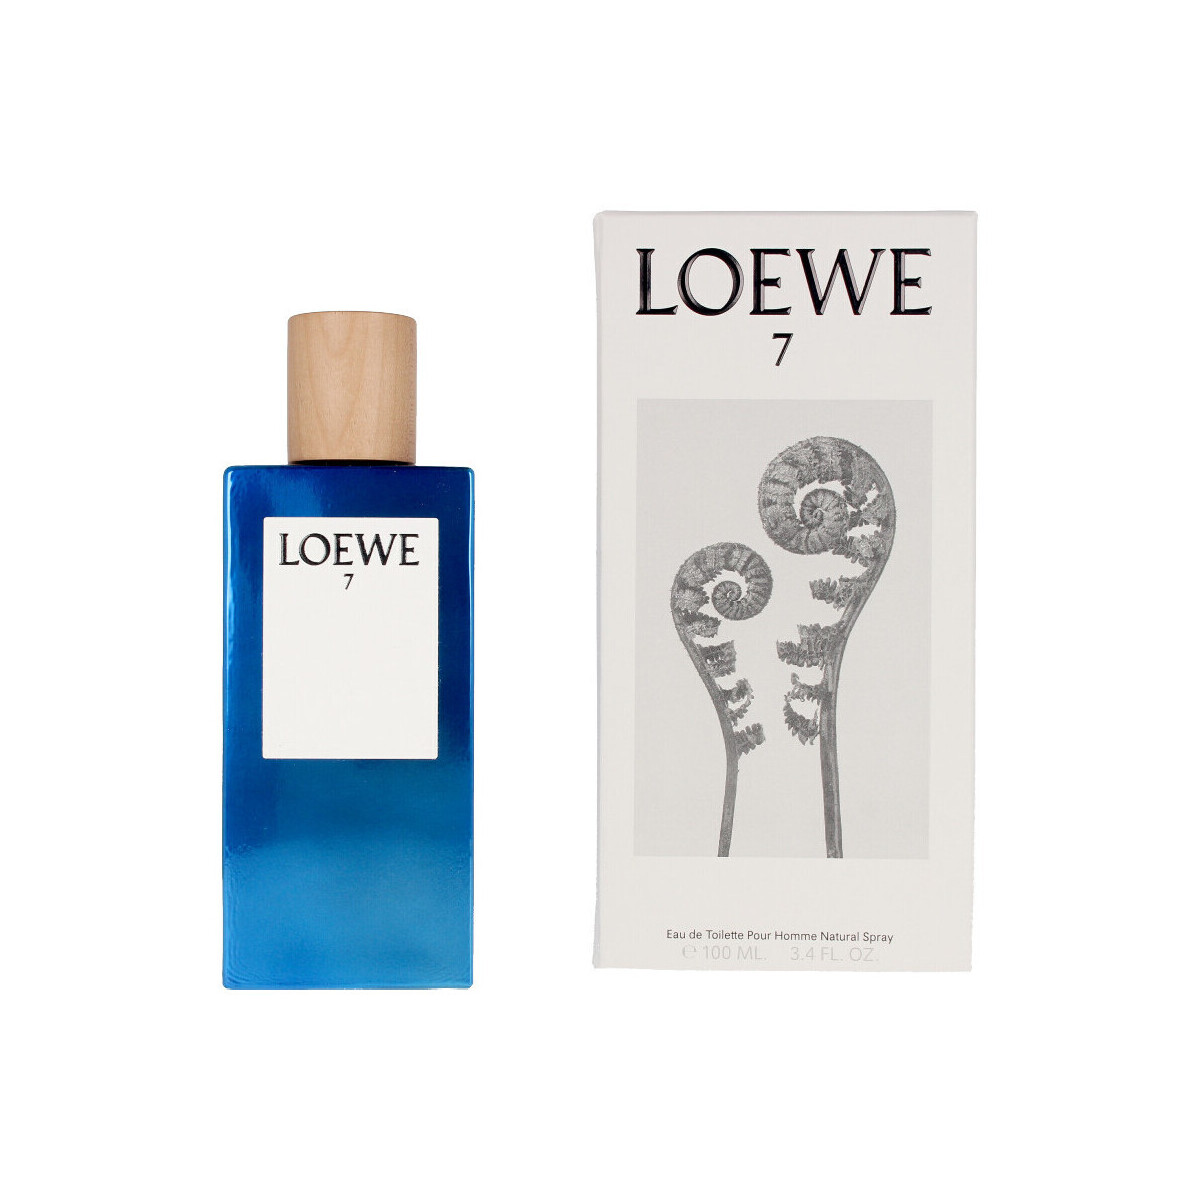 Beauté Homme Cologne intarsia Loewe 7 De  - eau de toilette - 100ml - vaporisateur 7 De intarsia Loewe - cologne - 100ml - spray